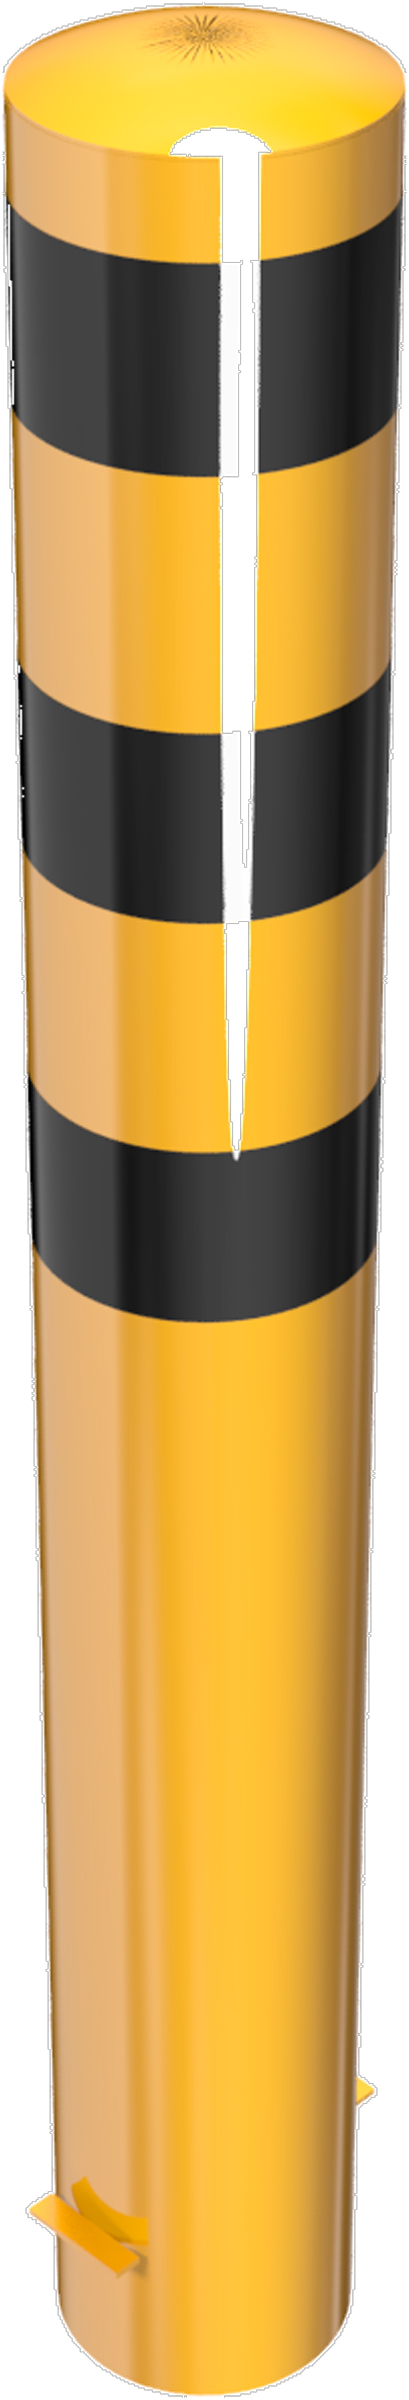 Schake Stahlrohrpoller OE Ø 193 mm gelb | schwarz - 1,50 m